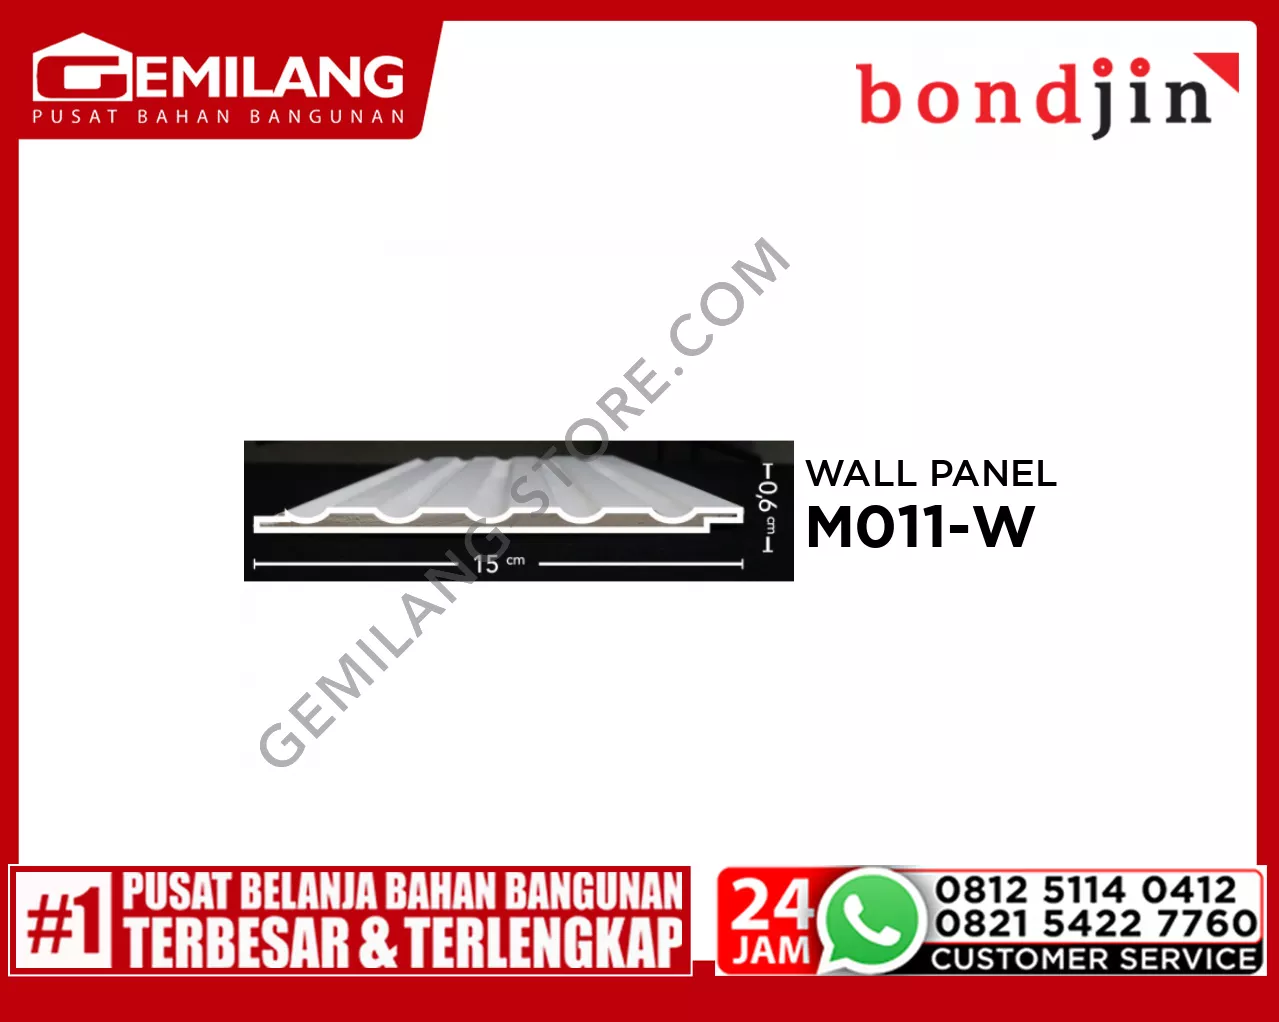 BONDJIN WALL PANEL M011-W (150 x 2400 x 6T)